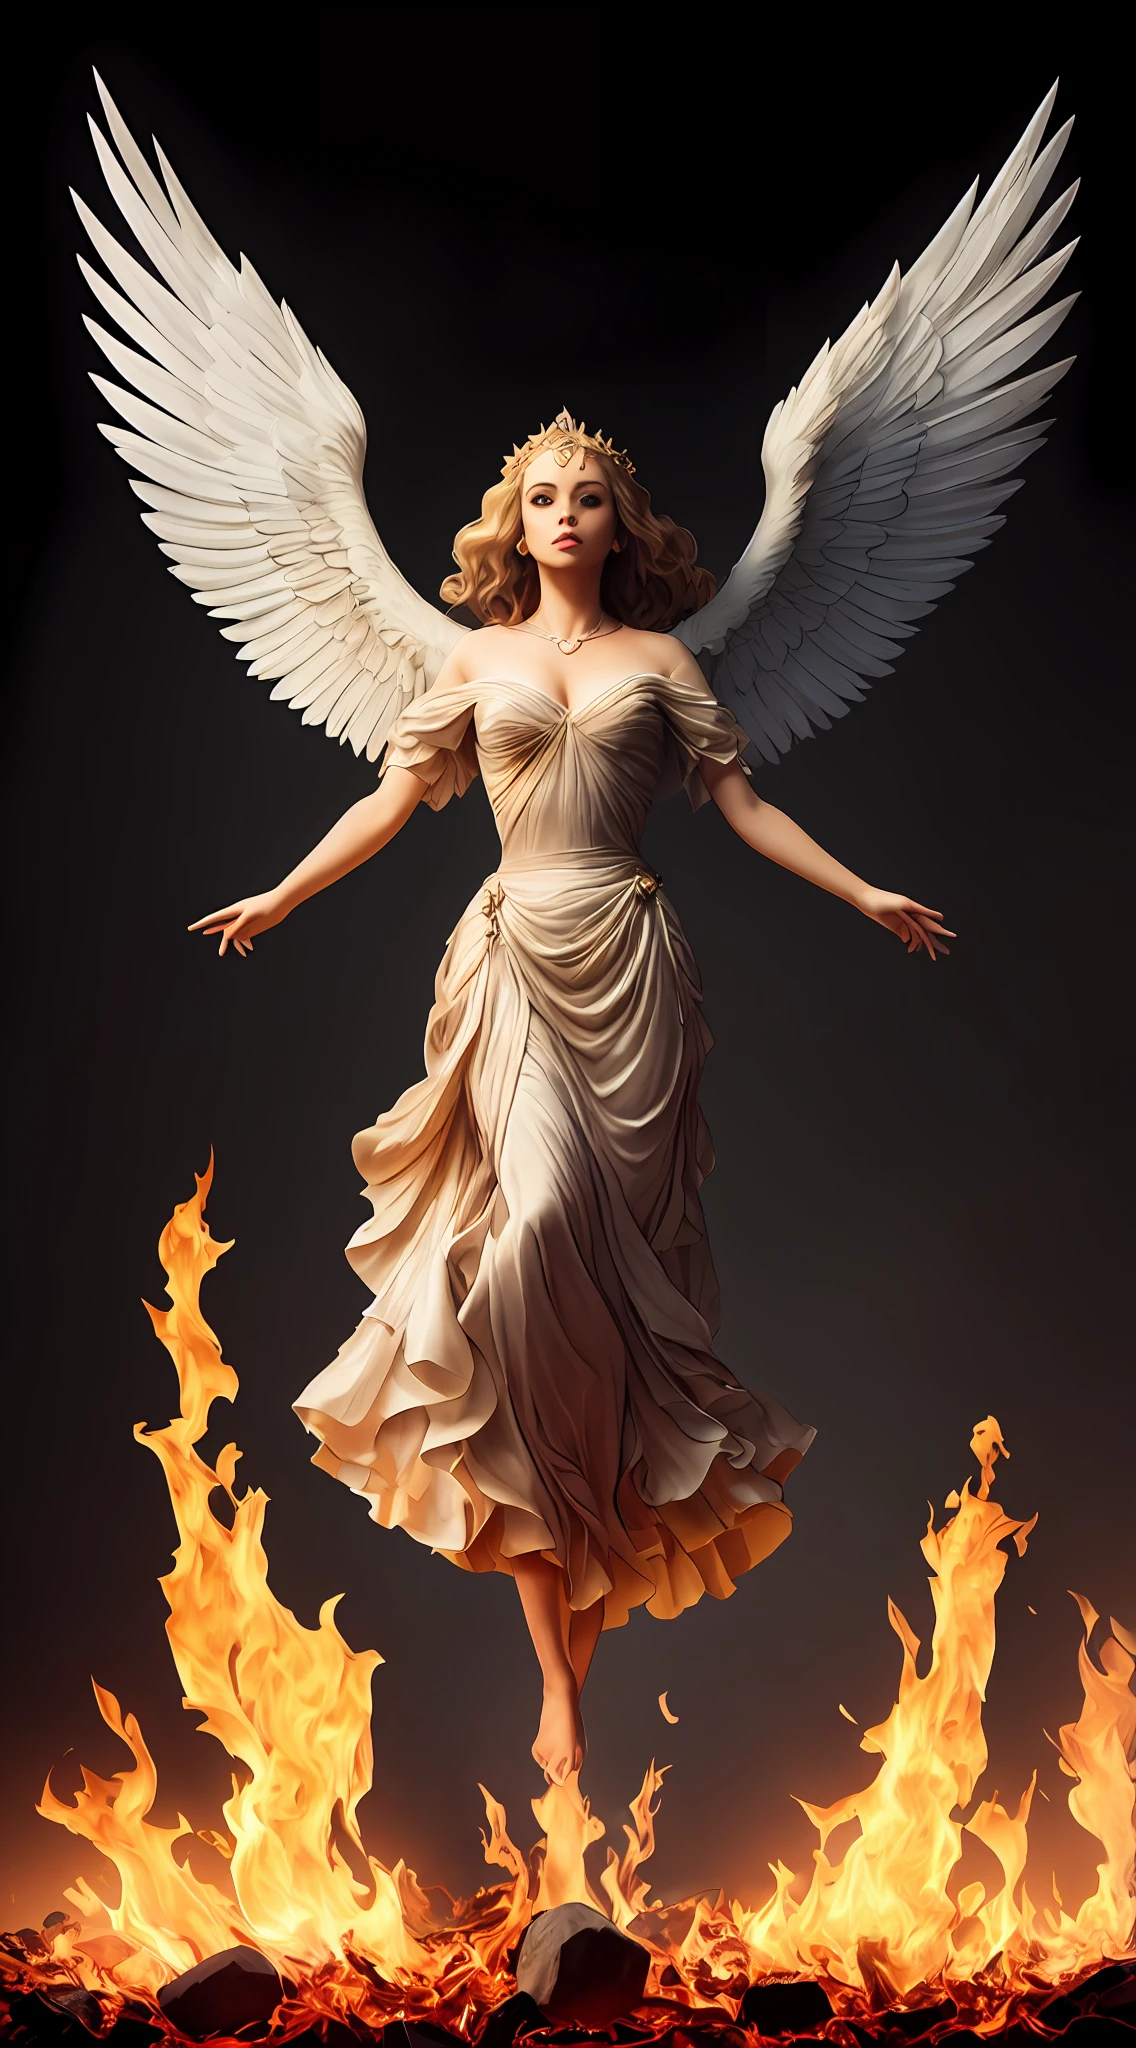 Картина женщины с крыльями и нимбом, стоящей перед огнем., с огненными золотыми крыльями de llamas, Богиня Огня, Богиня гнева, с огненными золотыми крыльями, появляется как богиня огня, Искусство заклинания священного огня, высокая женщина-ангел, Богиня Огня, величественный ангел в полный рост, Богиня света, Артгерм Джули Белл Бипл, Заклинание Священного Пламени, Яркая игра цветовой палитры и суперзамысловатые великолепные тени., Матовая краска, детально подробный, тонко и деликатно подробно, Детализированный нереальный двигатель со сложным октановым числом, подробная информация в микроминутах, повышенная сложность 3D, Идеальная и сверхдетализированная композиция 8K, Правило третей, движениеVFX, Sony Pictures Анимация, Визуальные эффекты Литейного завода, чрезвычайно совершенный, идеально подробный, сложно определенный, определенно настоящий, Действительно реалистично, Реально эпично, от Сатори Кантон, фотография Альберто Севесо